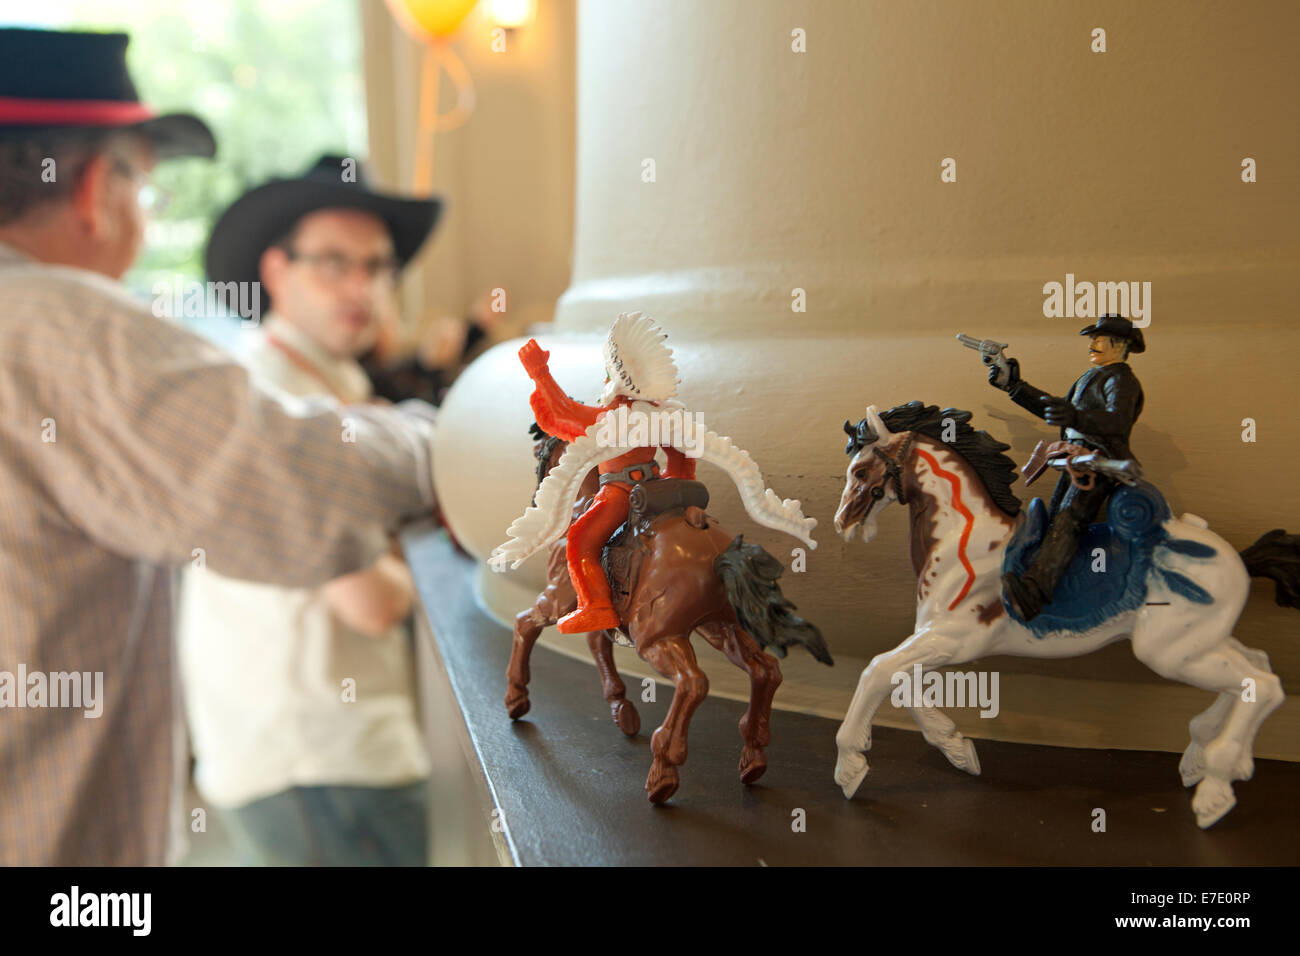 Modelle aus Kunststoff von Cowboy und Indianer auf dem Pferd in bar, Calgary, Alberta, Kanada Stockfoto